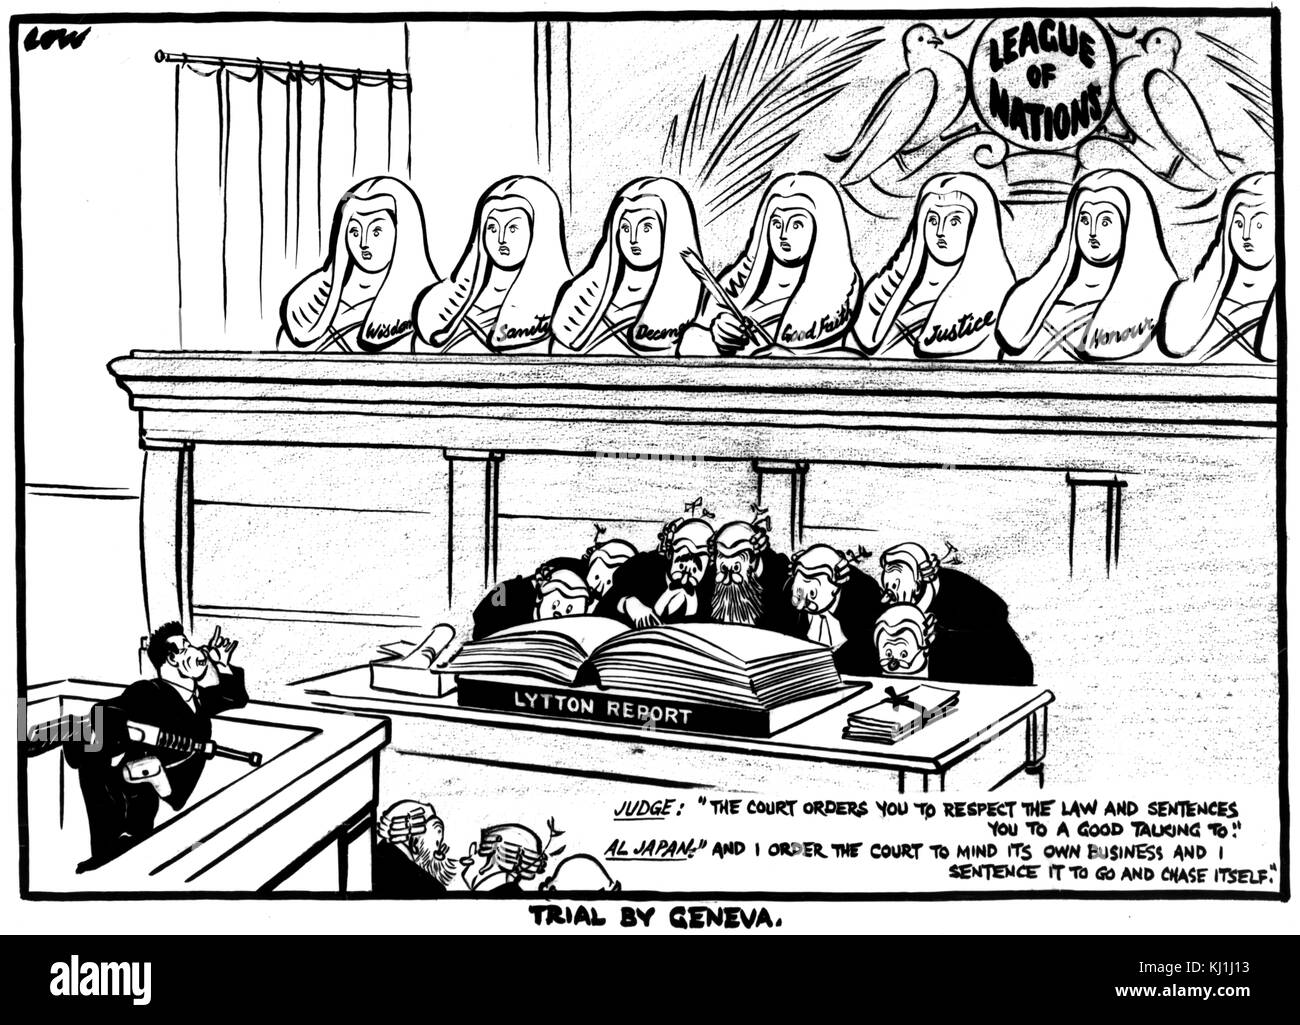 Satirischer Zeichentrickfilm mit dem Titel "Studie von Genf" von David Low (1891-1963) ein Neuseeland politischen Zeichner und Karikaturist, die im Vereinigten Königreich lebten. Vom 20. Jahrhundert Stockfoto